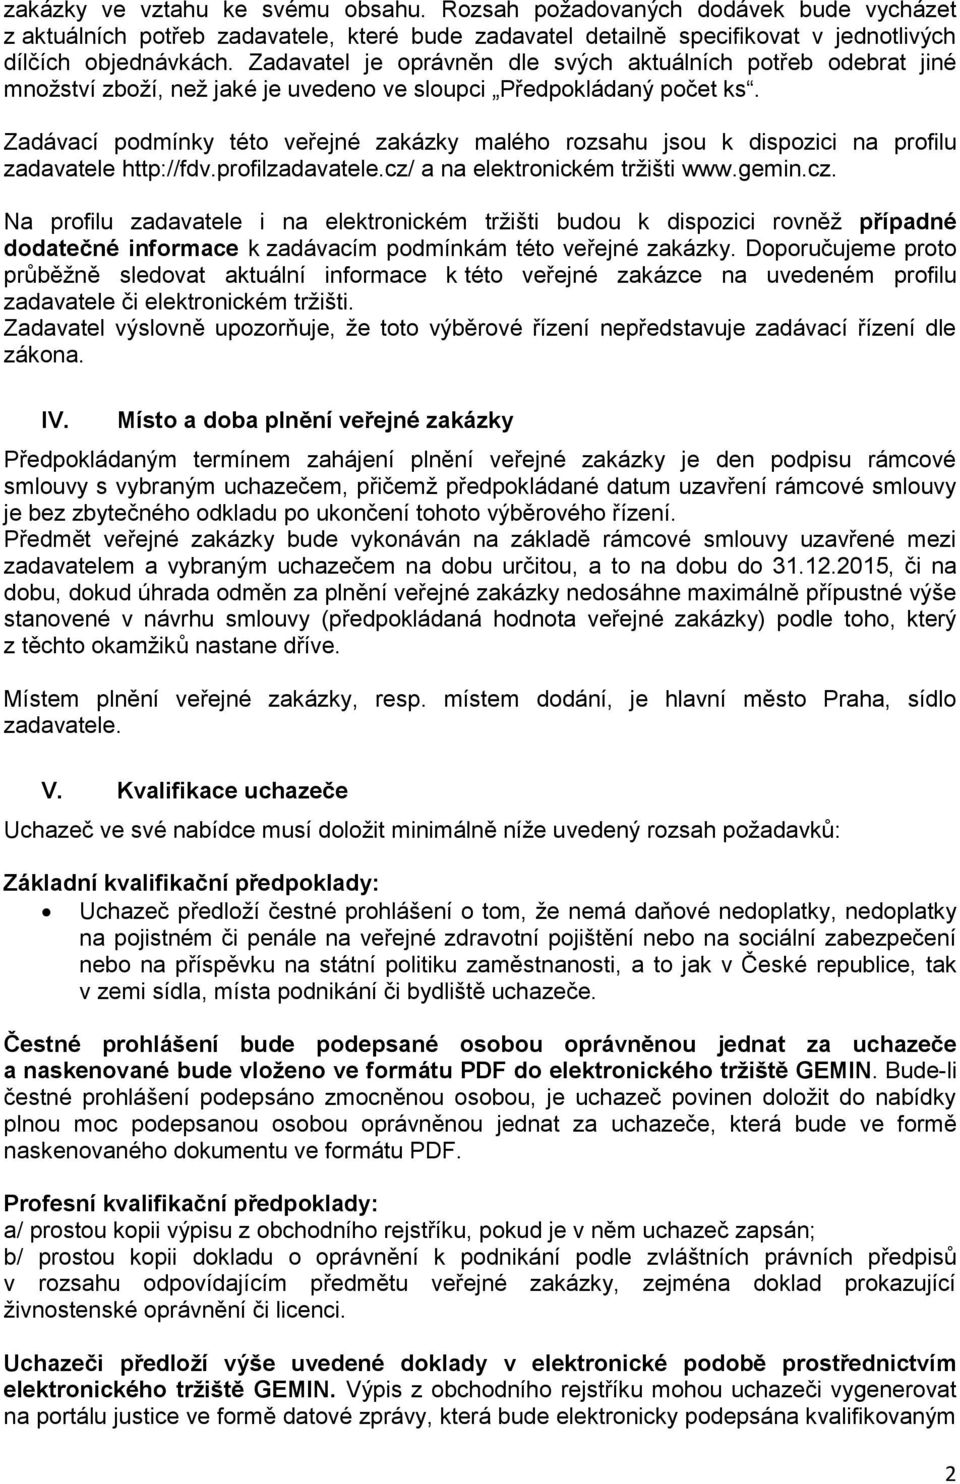 Zadávací podmínky této veřejné zakázky malého rozsahu jsou k dispozici na profilu zadavatele http://fdv.profilzadavatele.cz/